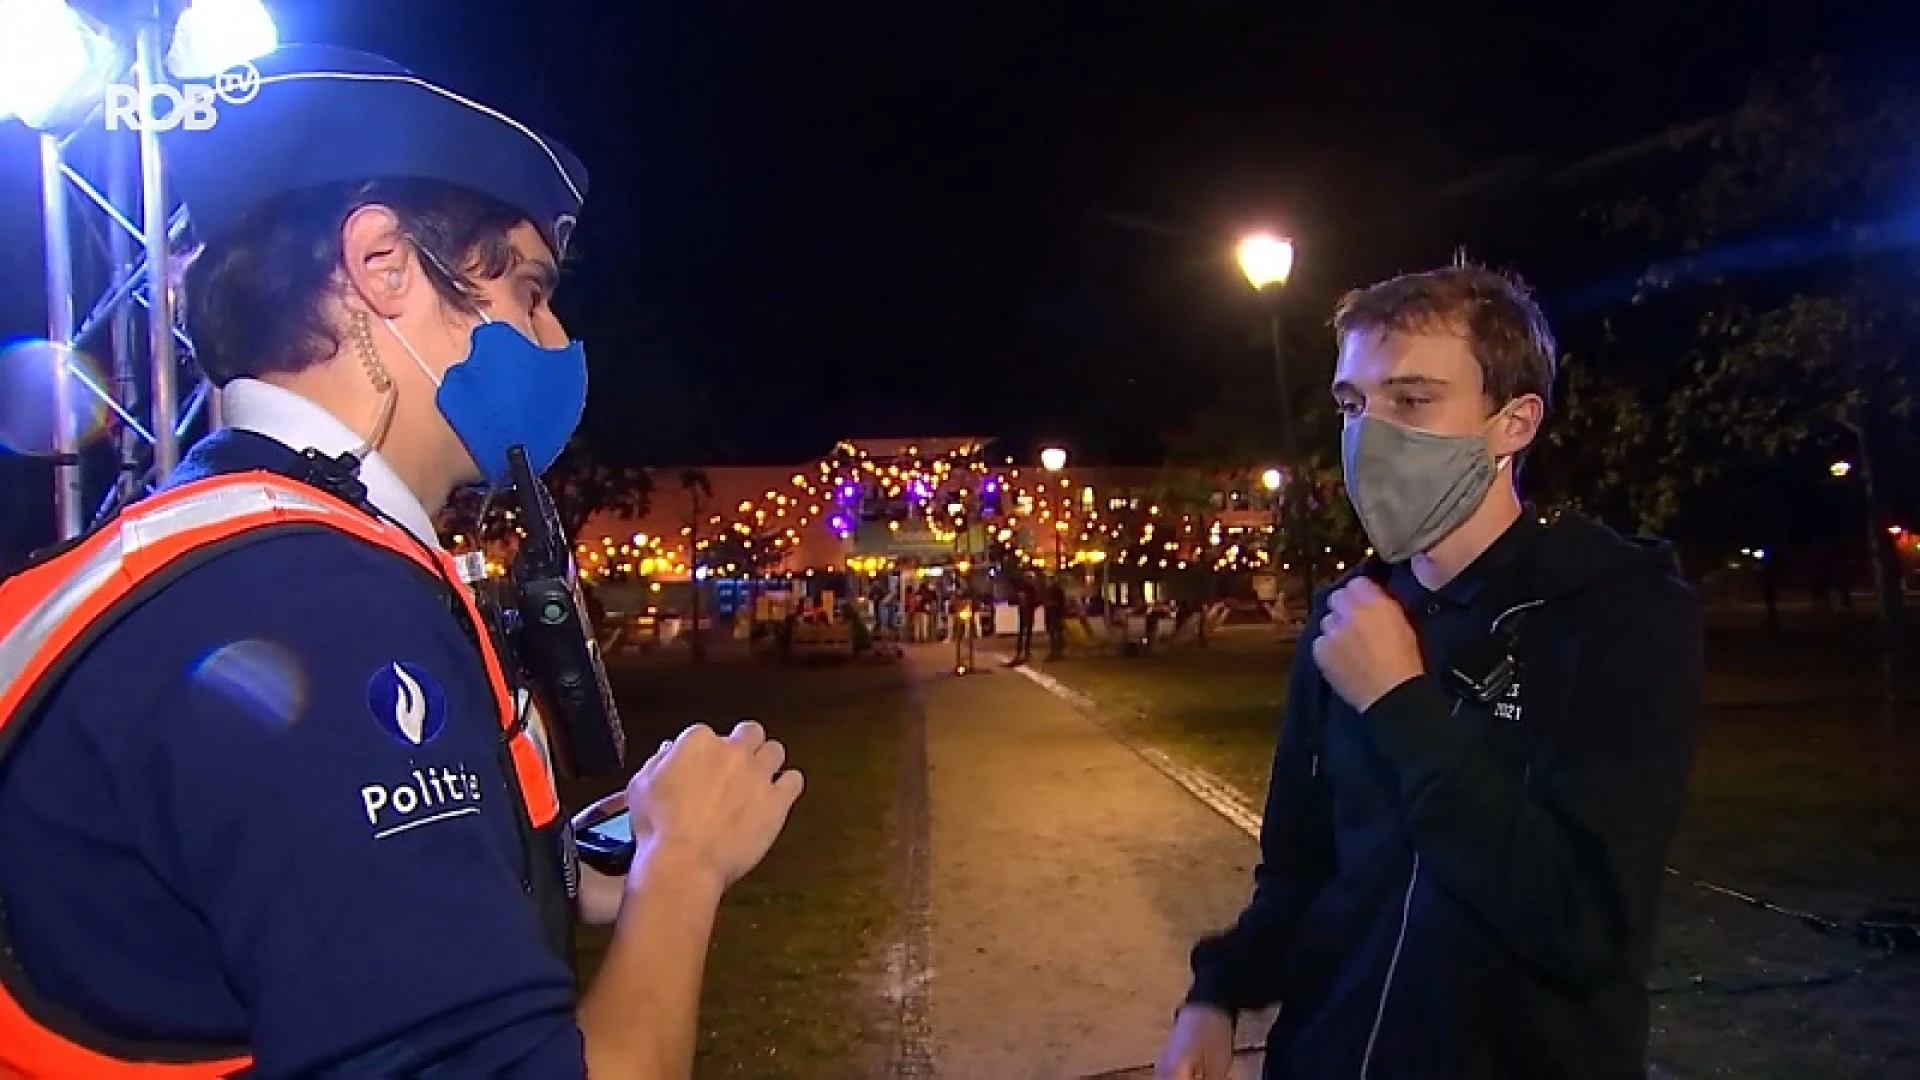 ROB-tv duikt samen met studentenflik Gil de uitgaansnacht in: van voorbeeldstudenten tot "rotte appels"